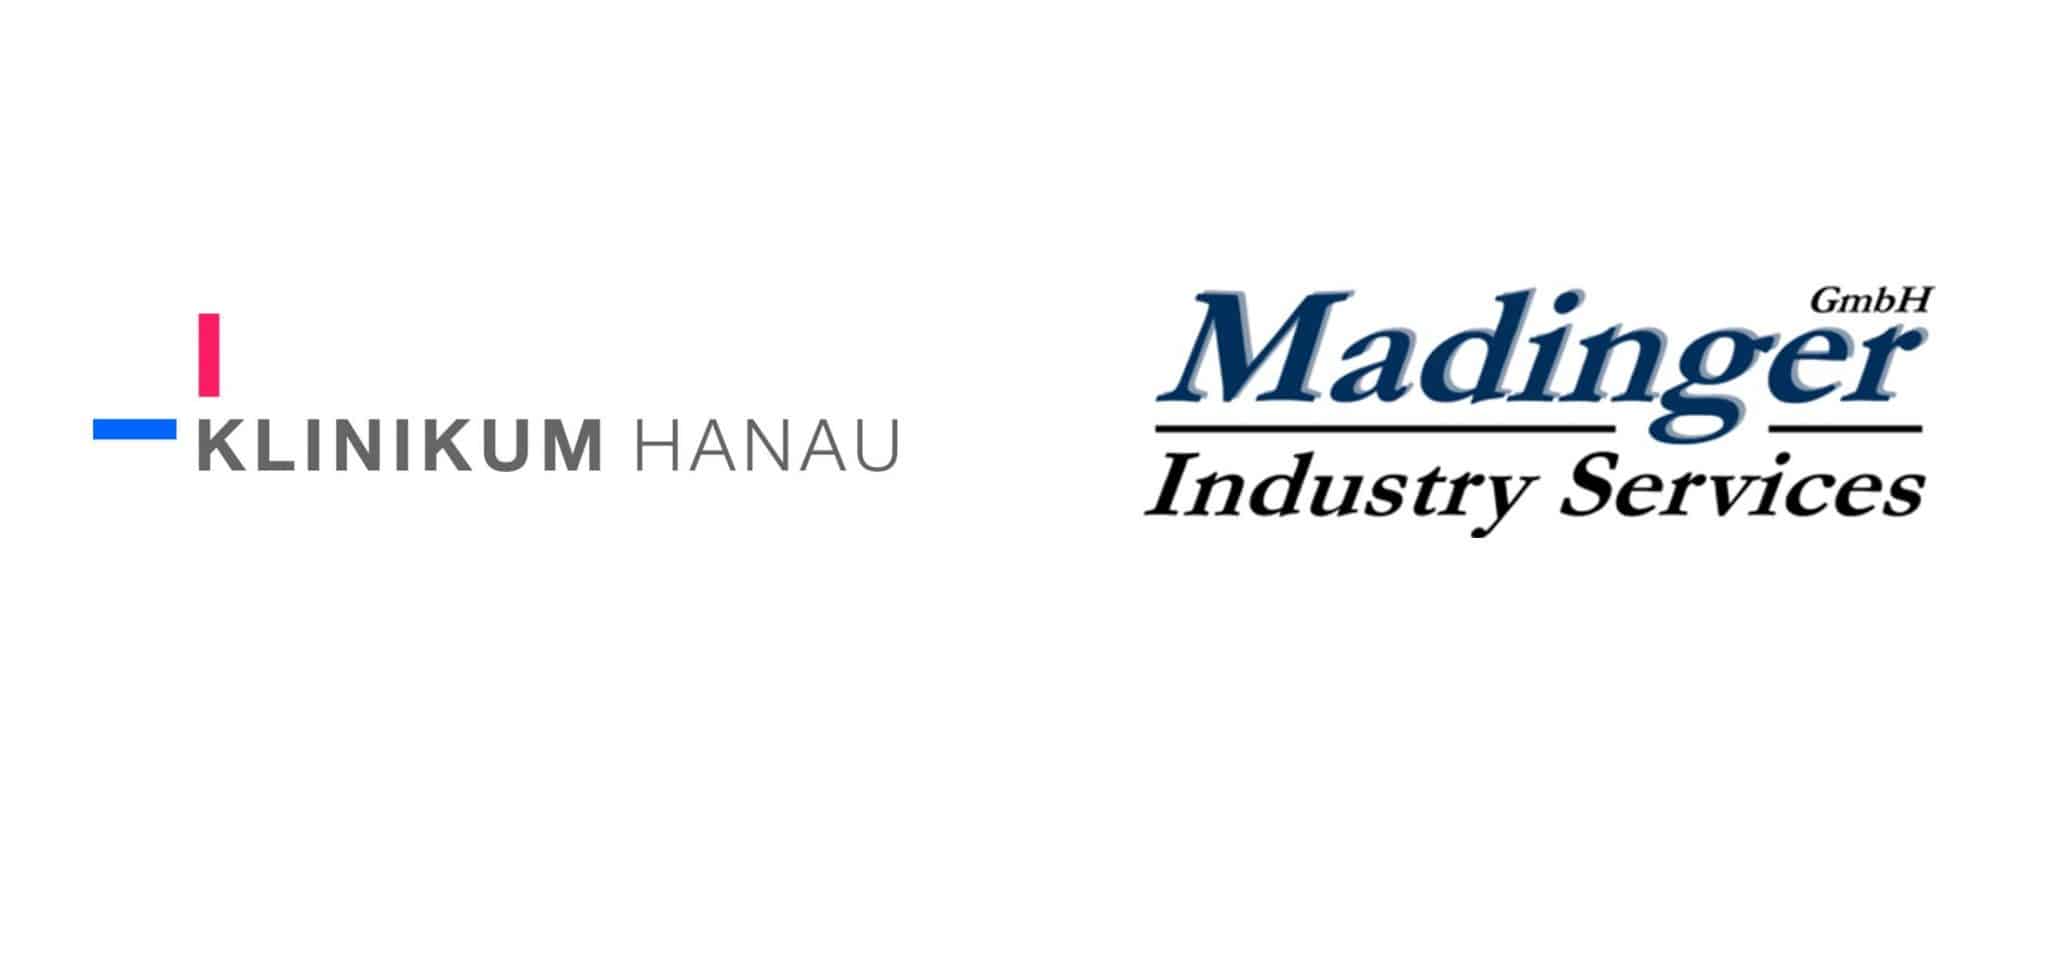 Klinik Hanau Madinger Industry Service, Seminar Stellenanzeigen texten, Employer Branding, Arbeitgebermarke